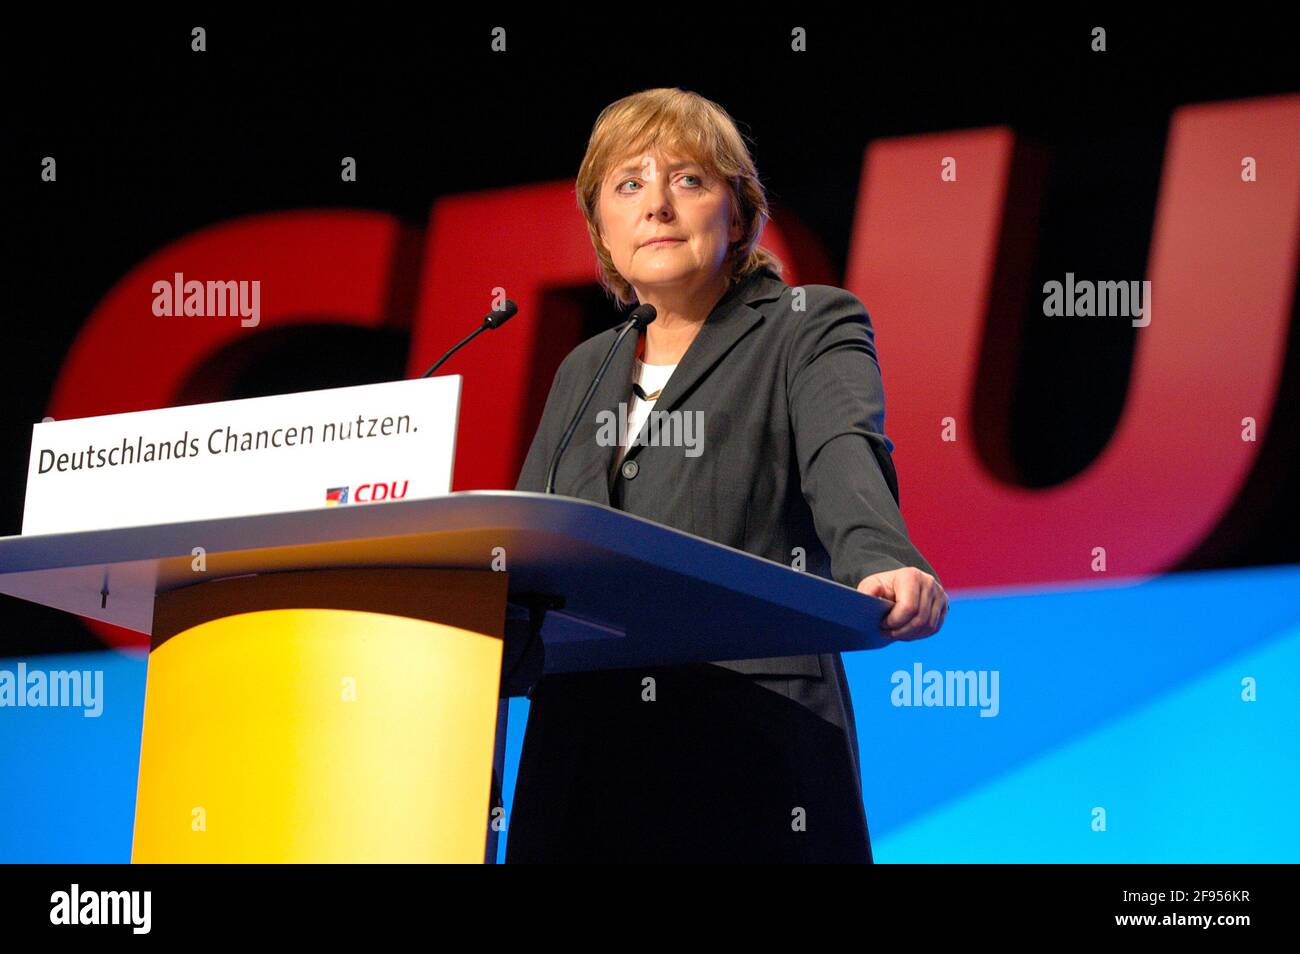 DEU, Deutschland, Düsseldorf, 06.12.2004: Angela Merkel, Bundesvorsitzende der CDU am Rednerpult zu Beginn des Bundesparteitags der CDU 2004 in Düssel Stock Photo